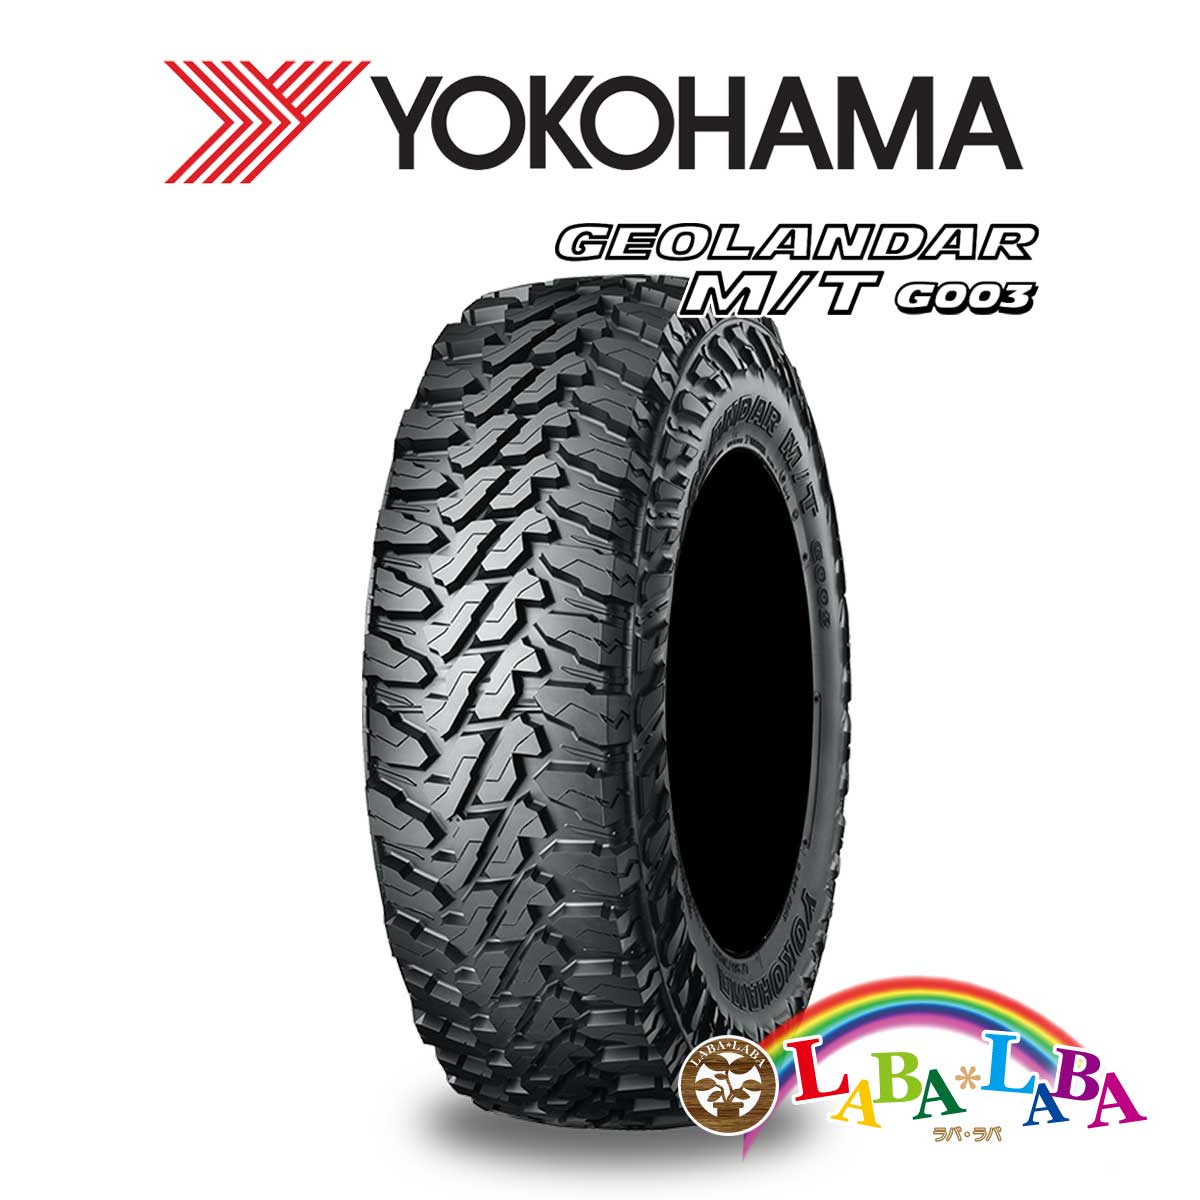 ２本以上送料無料 国産タイヤ オフロード 新品(タイヤのみ) YOKOHAMA ヨコハマ GEOLANDAR ジオランダー M/T (MT) G003 295/55R20 123/120Q マッドテレーン SUV 4WD